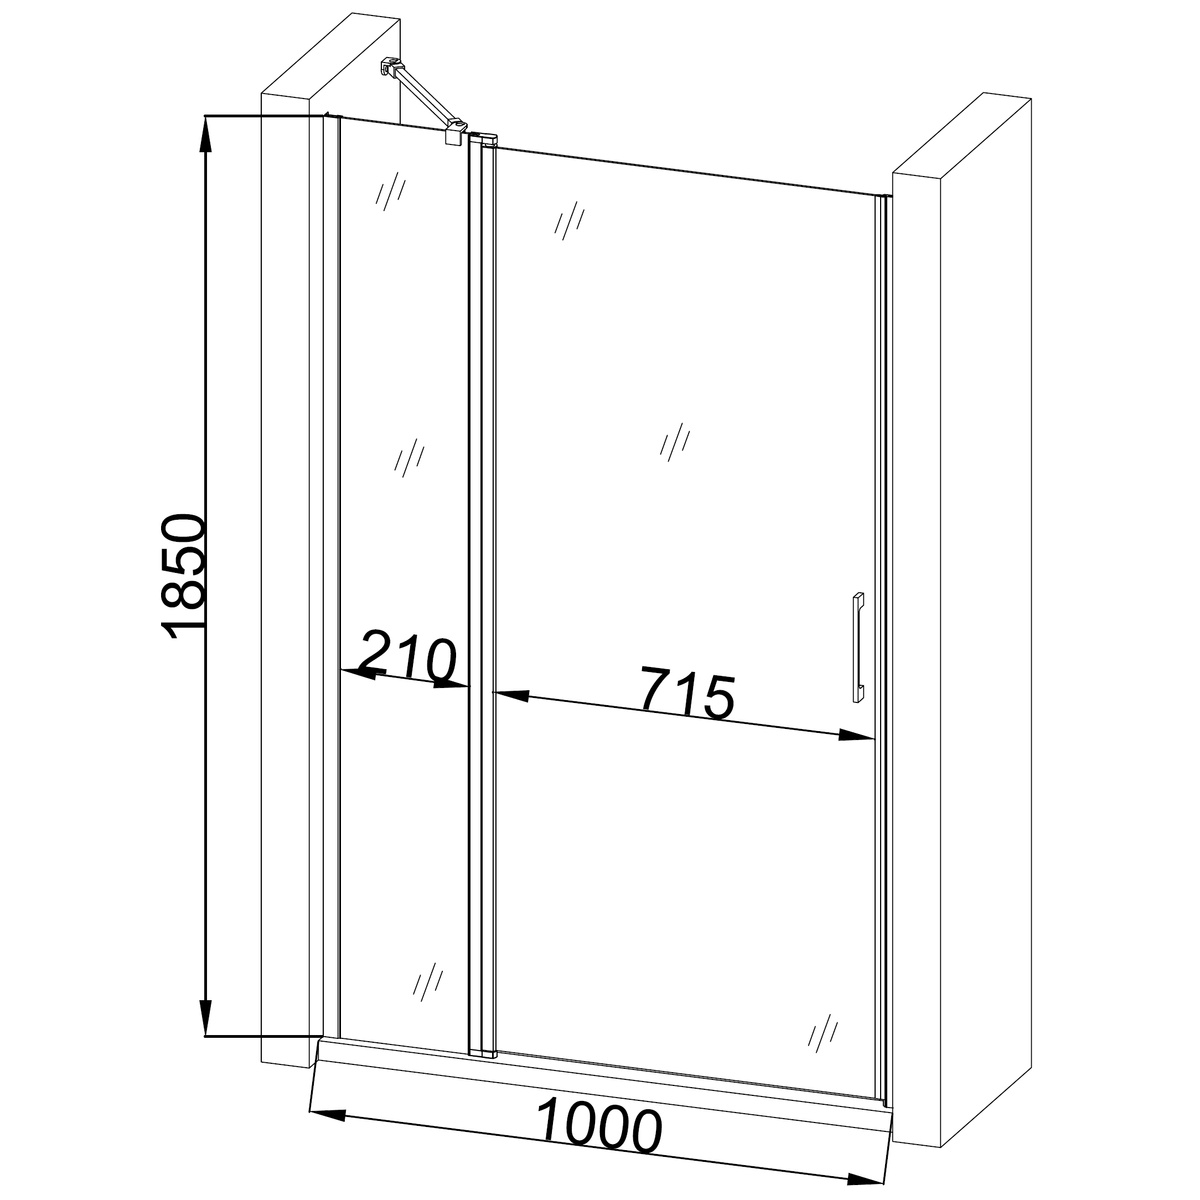 Двері для душової ніші BRAVO PASLENKA скляні універсальні розпашні двосекційні 185x100см прозорі 6мм профіль хром 000019809